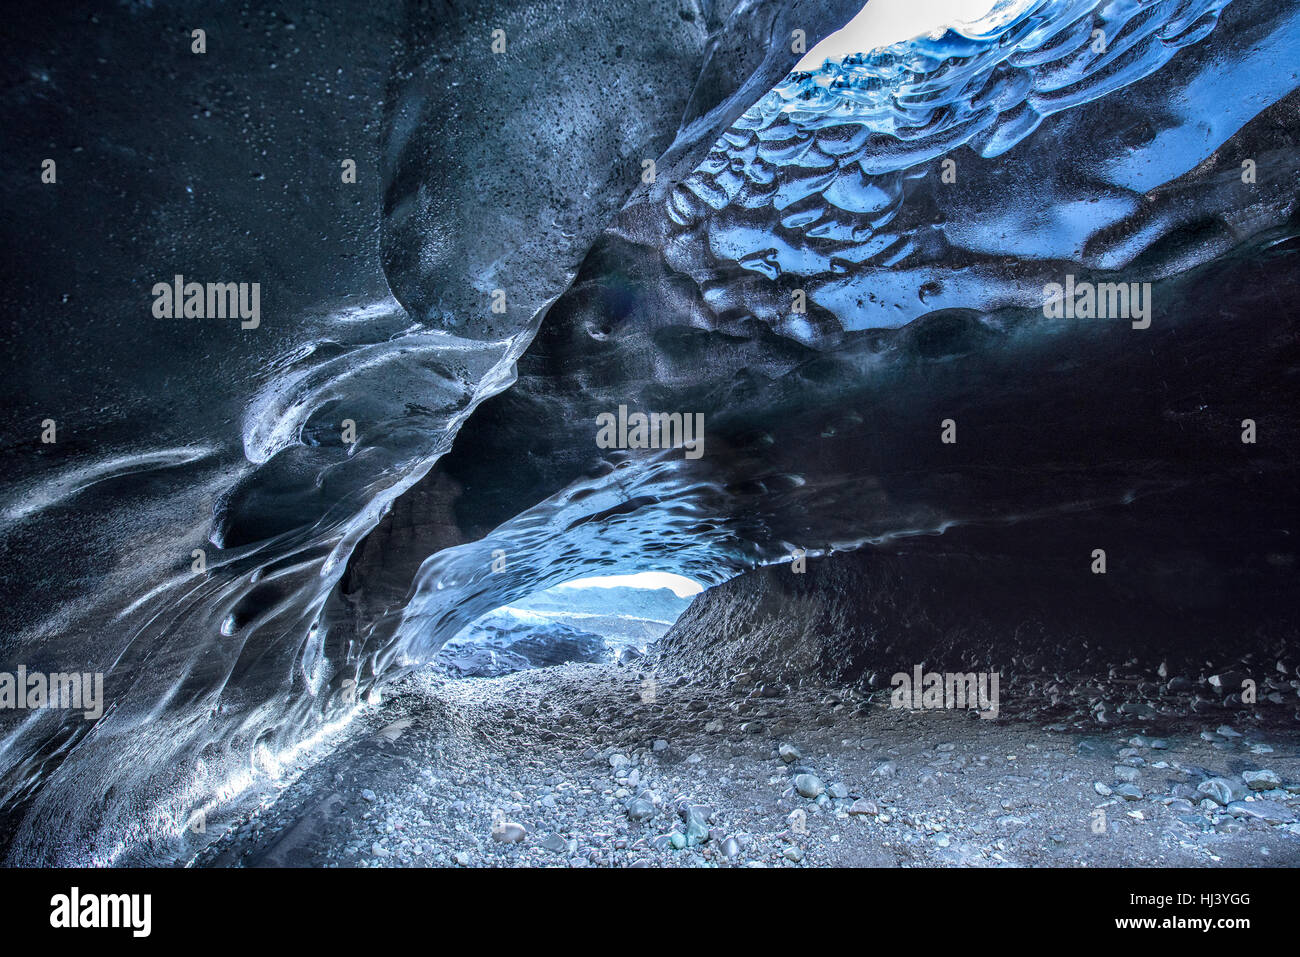 Una cueva de hielo volcánico en Islandia toma el color de la tierra negra de origen volcánico que rodean el glaciar desde que se formó la caverna. Foto de stock